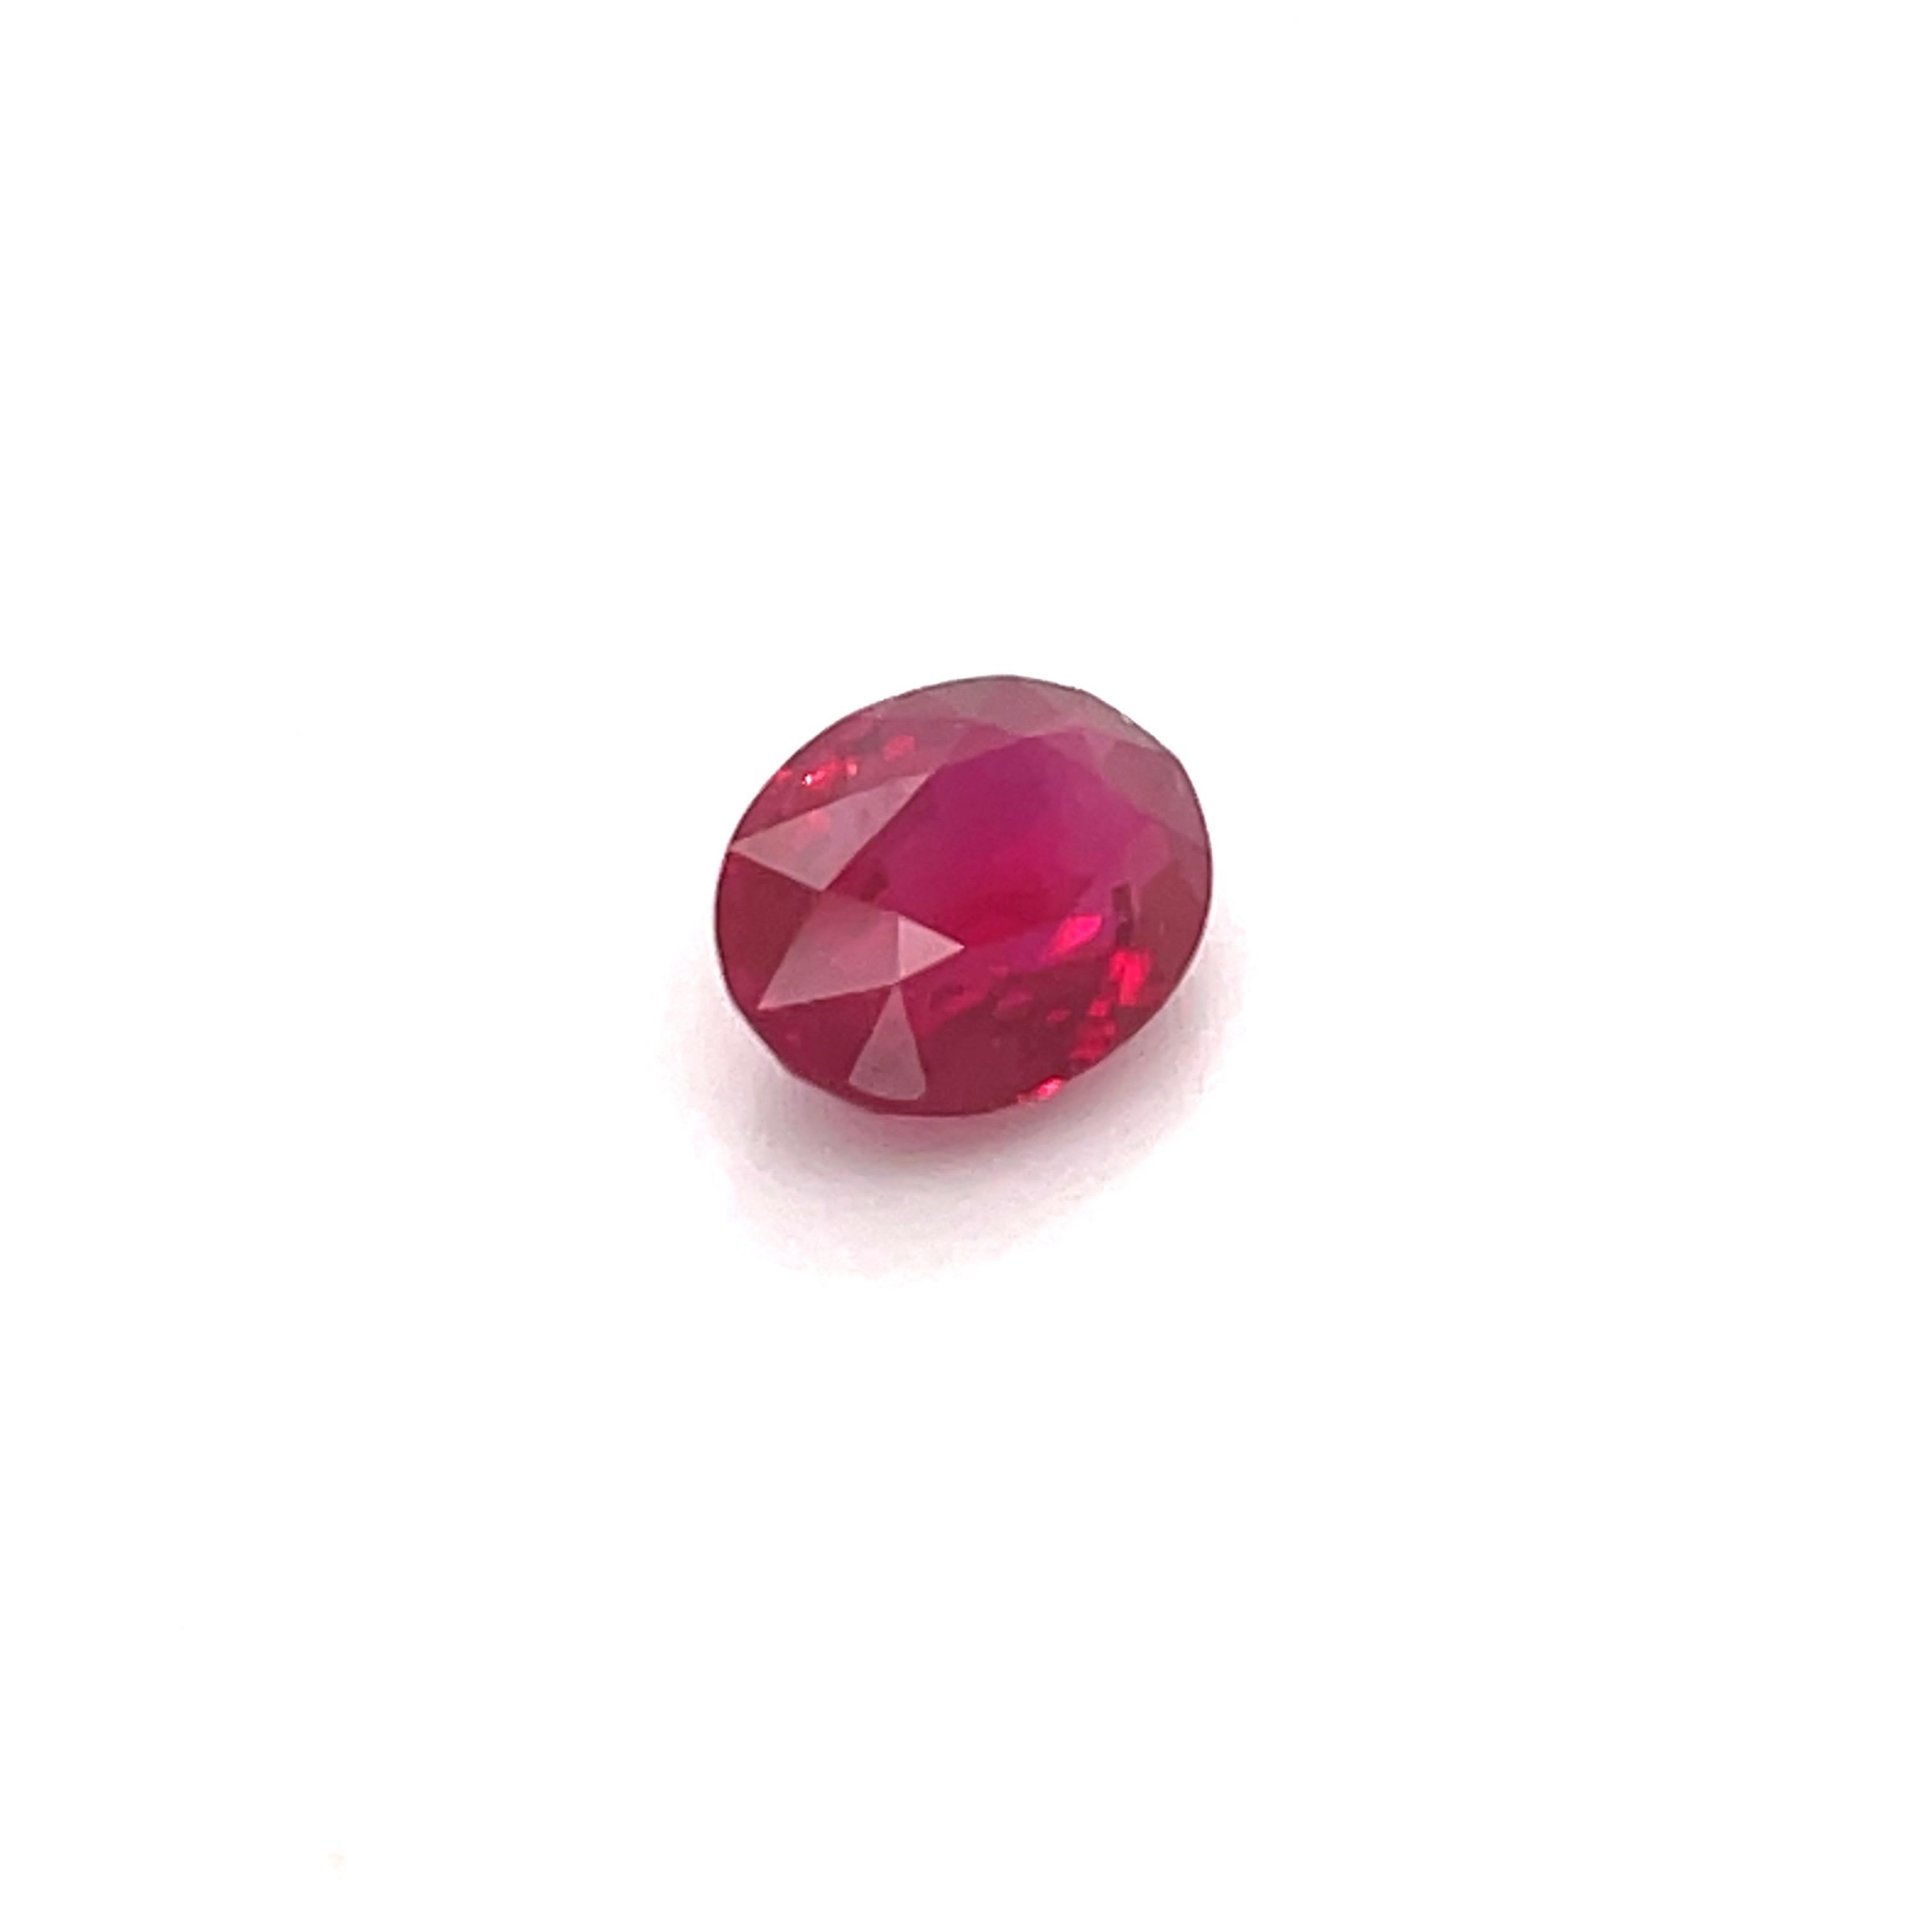 GRS & GIA zertifiziert Oval Form roten Rubin mit einem Gewicht von 2,17 Karat und misst 8,80 x 6,70 MM, Birma. Beheizt.
Kann in einem Ring, Anhänger oder Armband angepasst werden. 
Mehr Rubine auf Lager.
E-Mail für weitere Einzelheiten. 